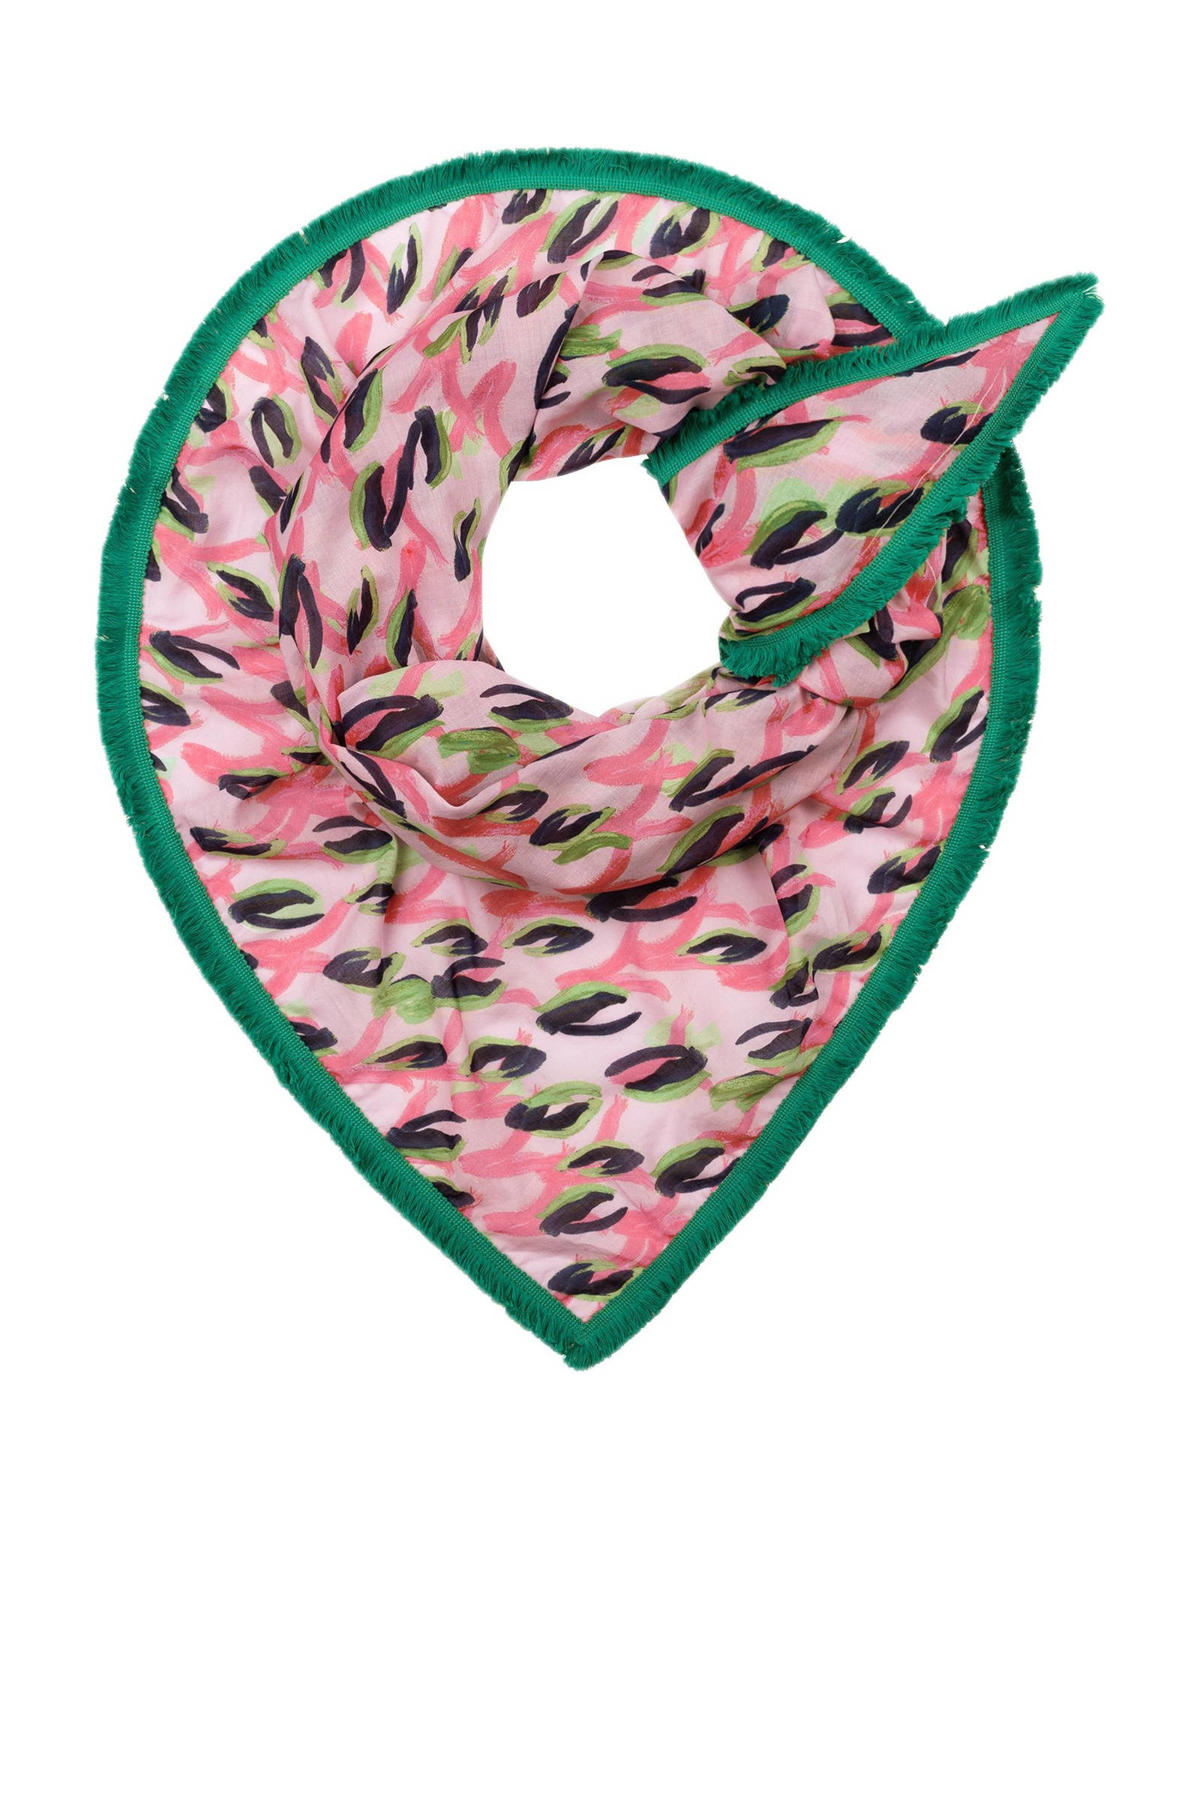 Communicatie netwerk Vrouw zich zorgen maken POM Amsterdam sjaal Animal met panterprint roze | wehkamp